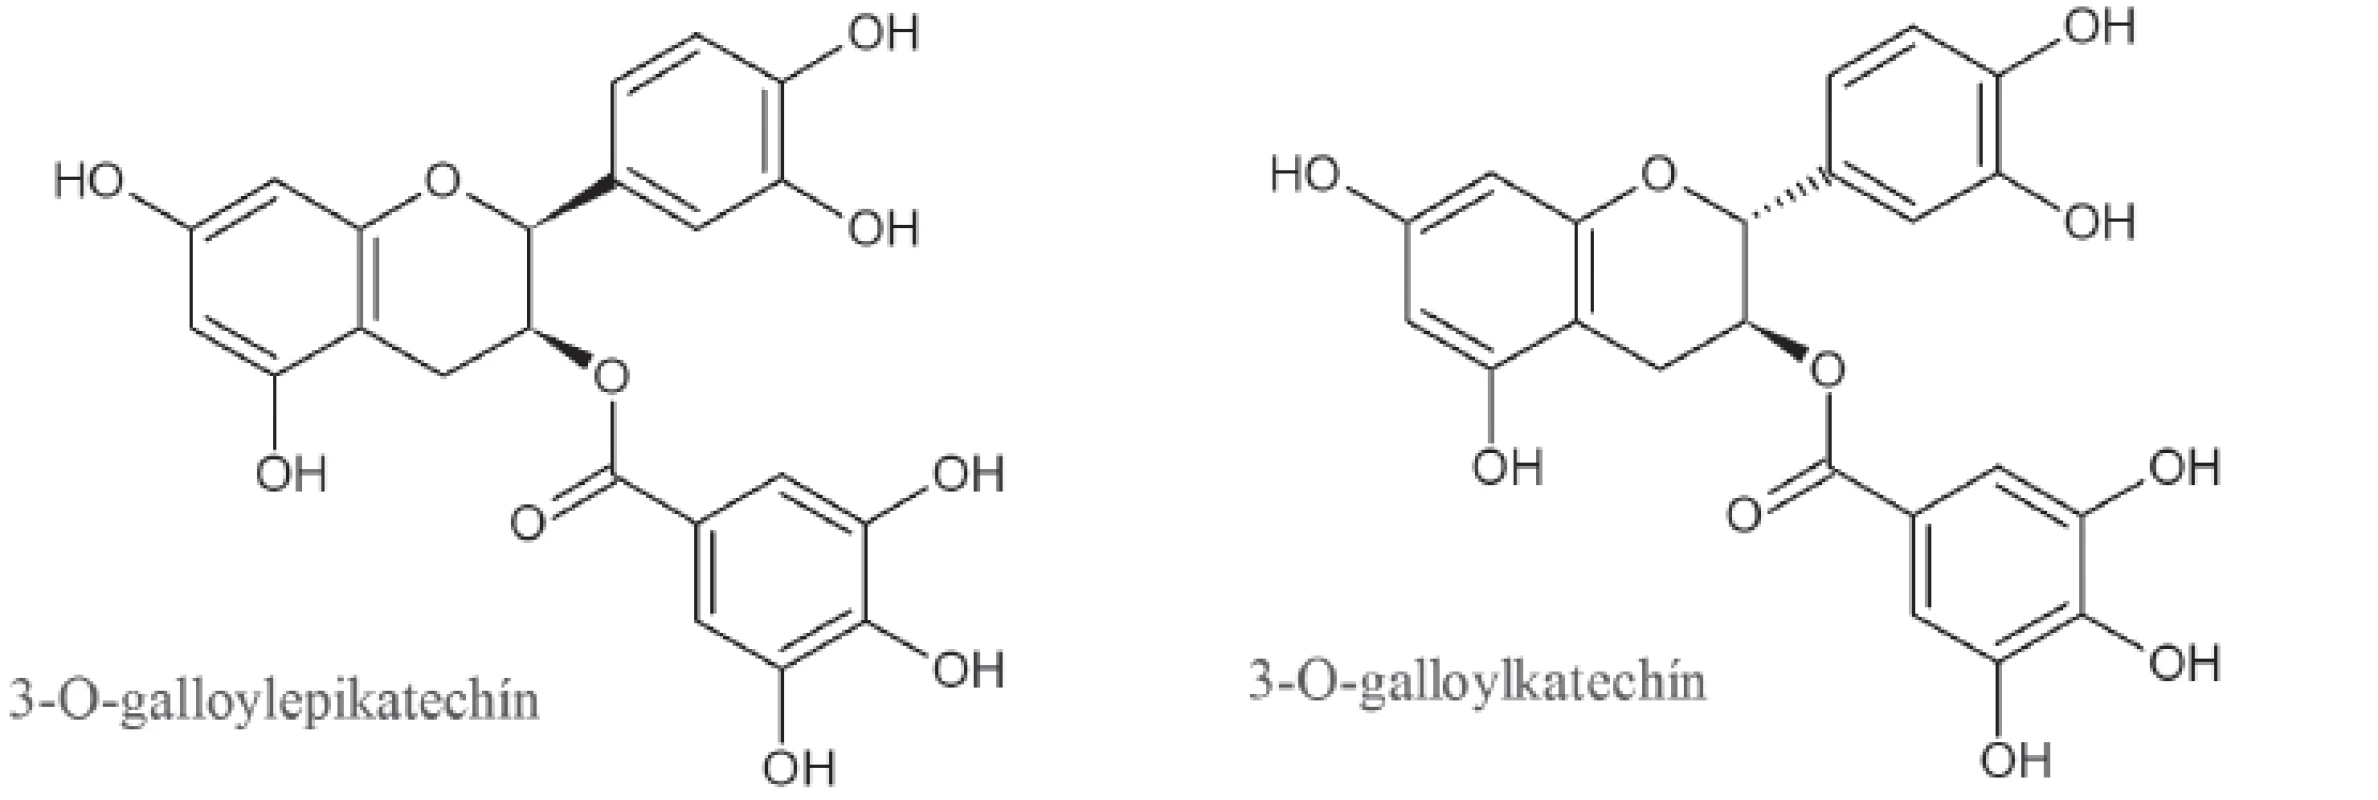 Štruktúra trieslovín zo zeleného čaju s inhibičným účinkom na α-amylázu